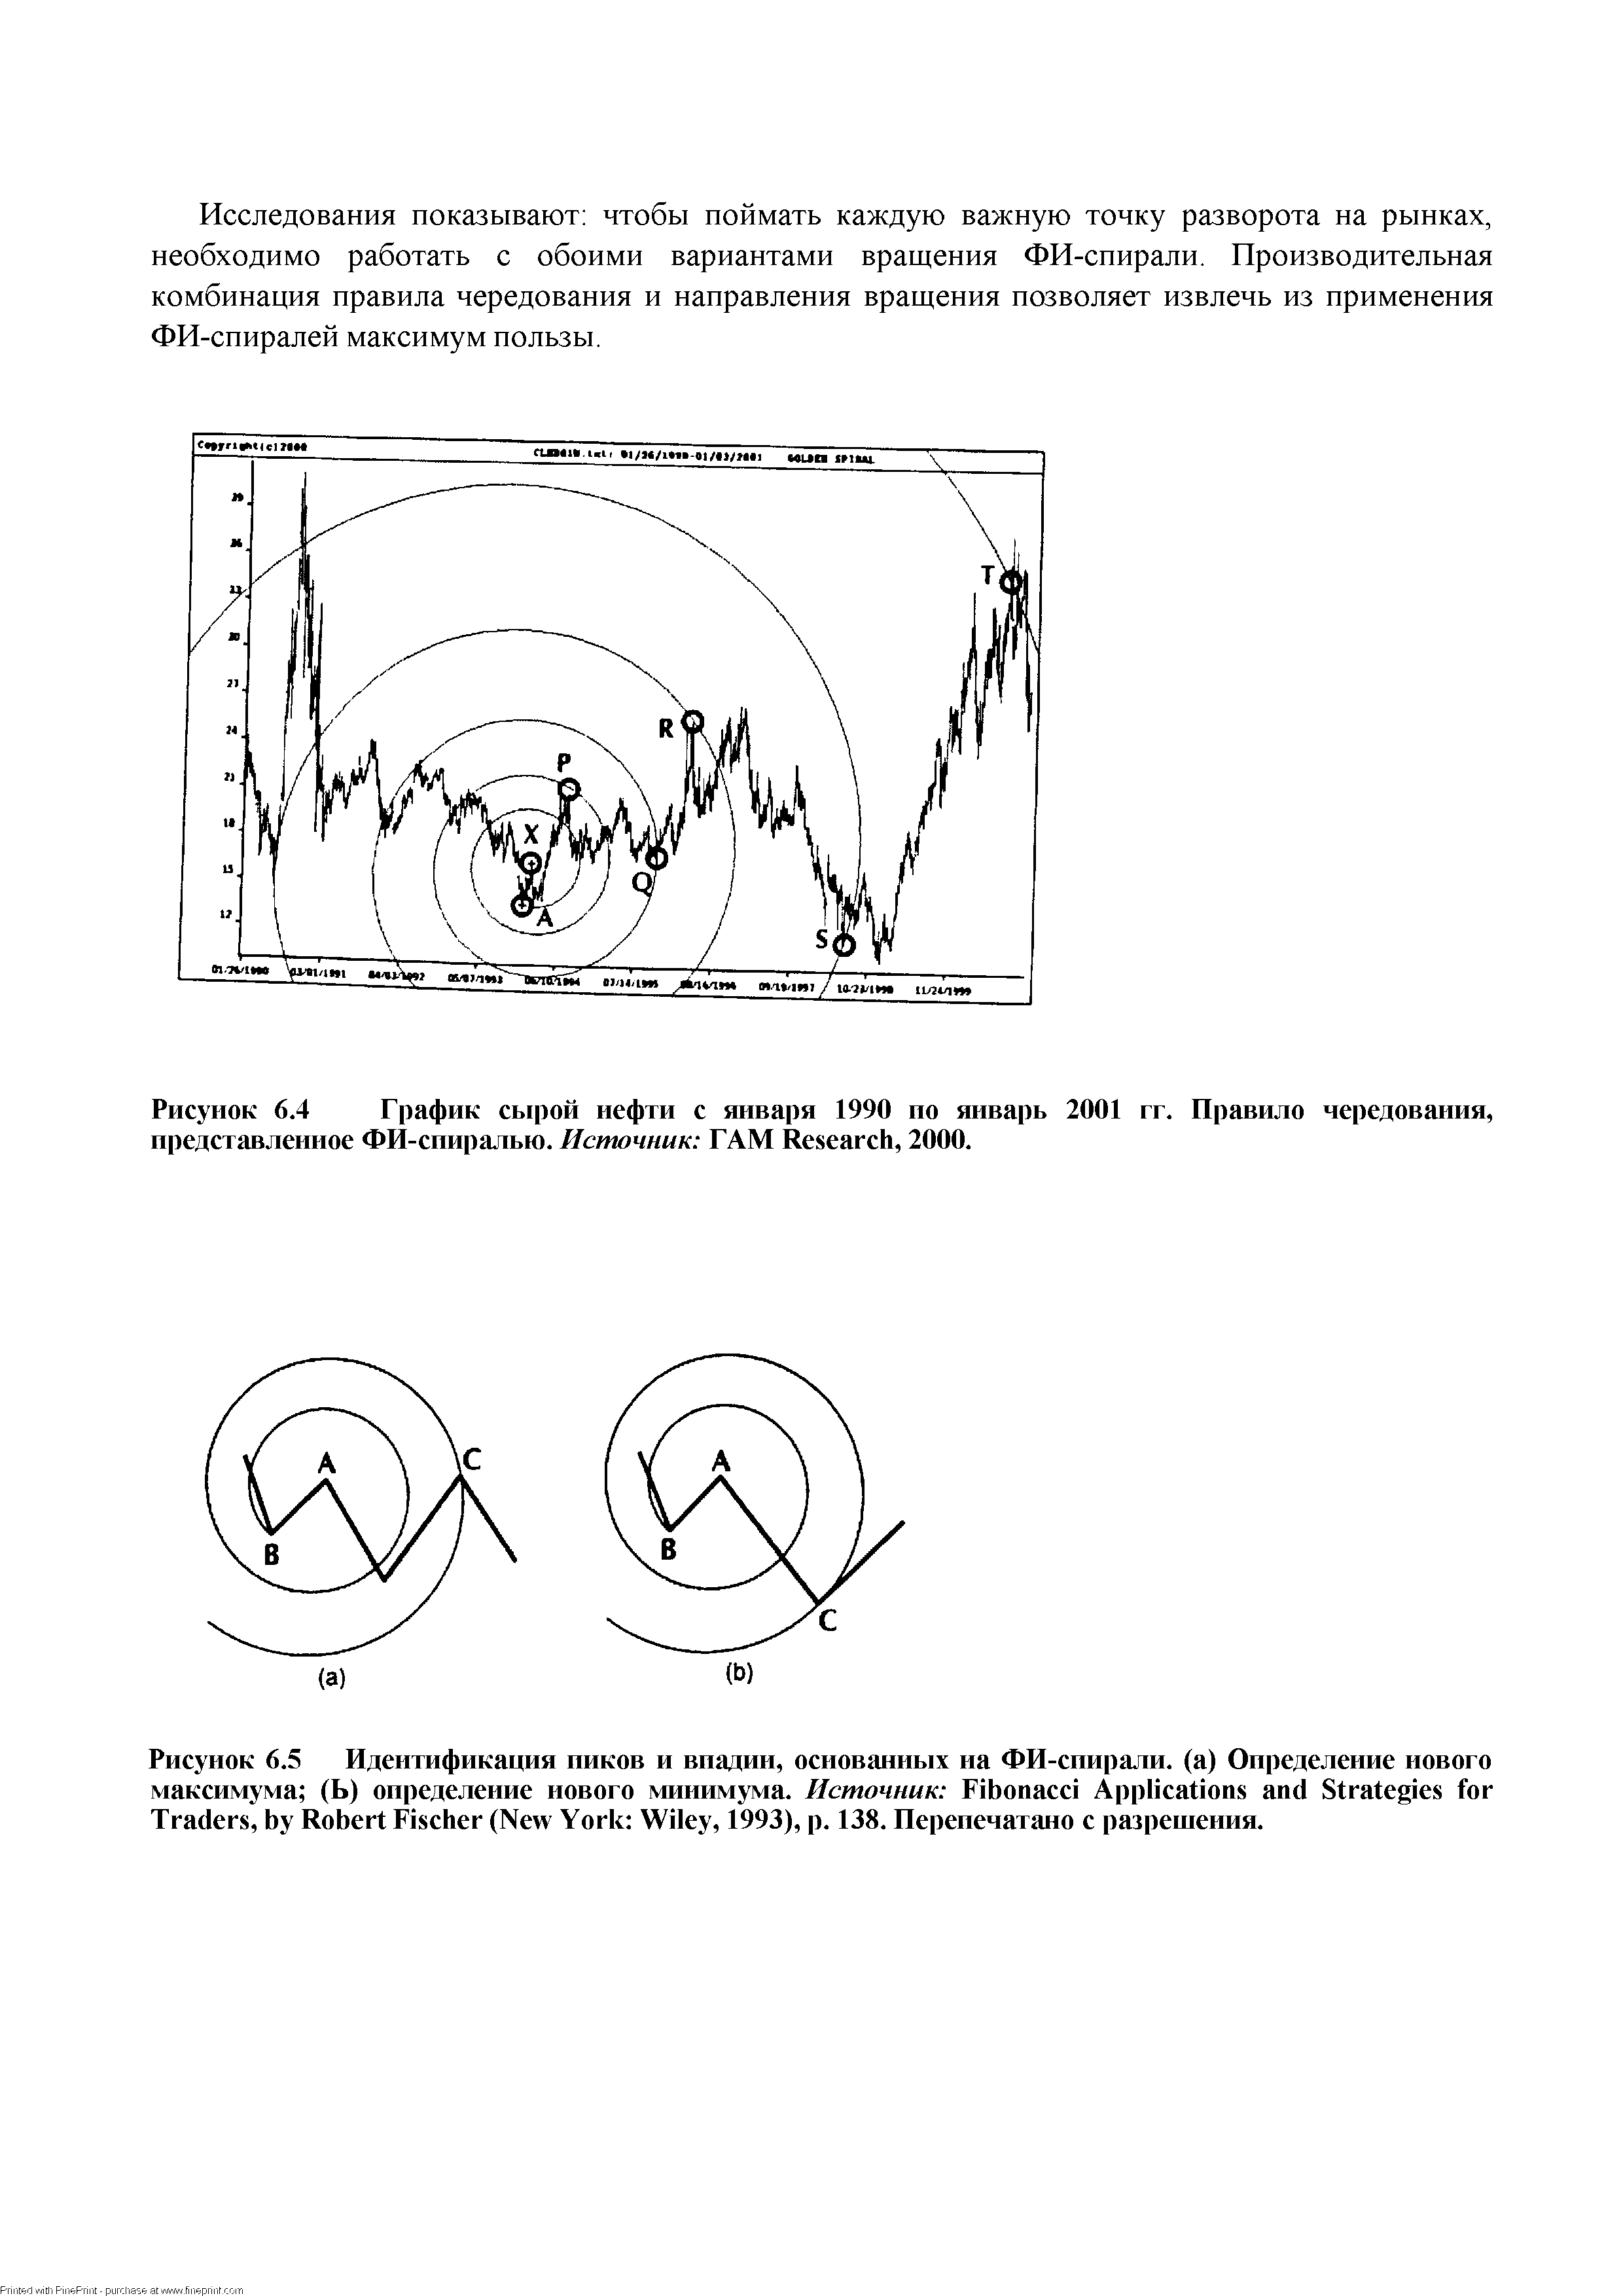 Рисунок 6.4 График сырой нефти с января 1990 но январь 2001 гг. Правило чередования, представленное ФИ-спиралью. Источник ГАМ Resear h, 2000.
